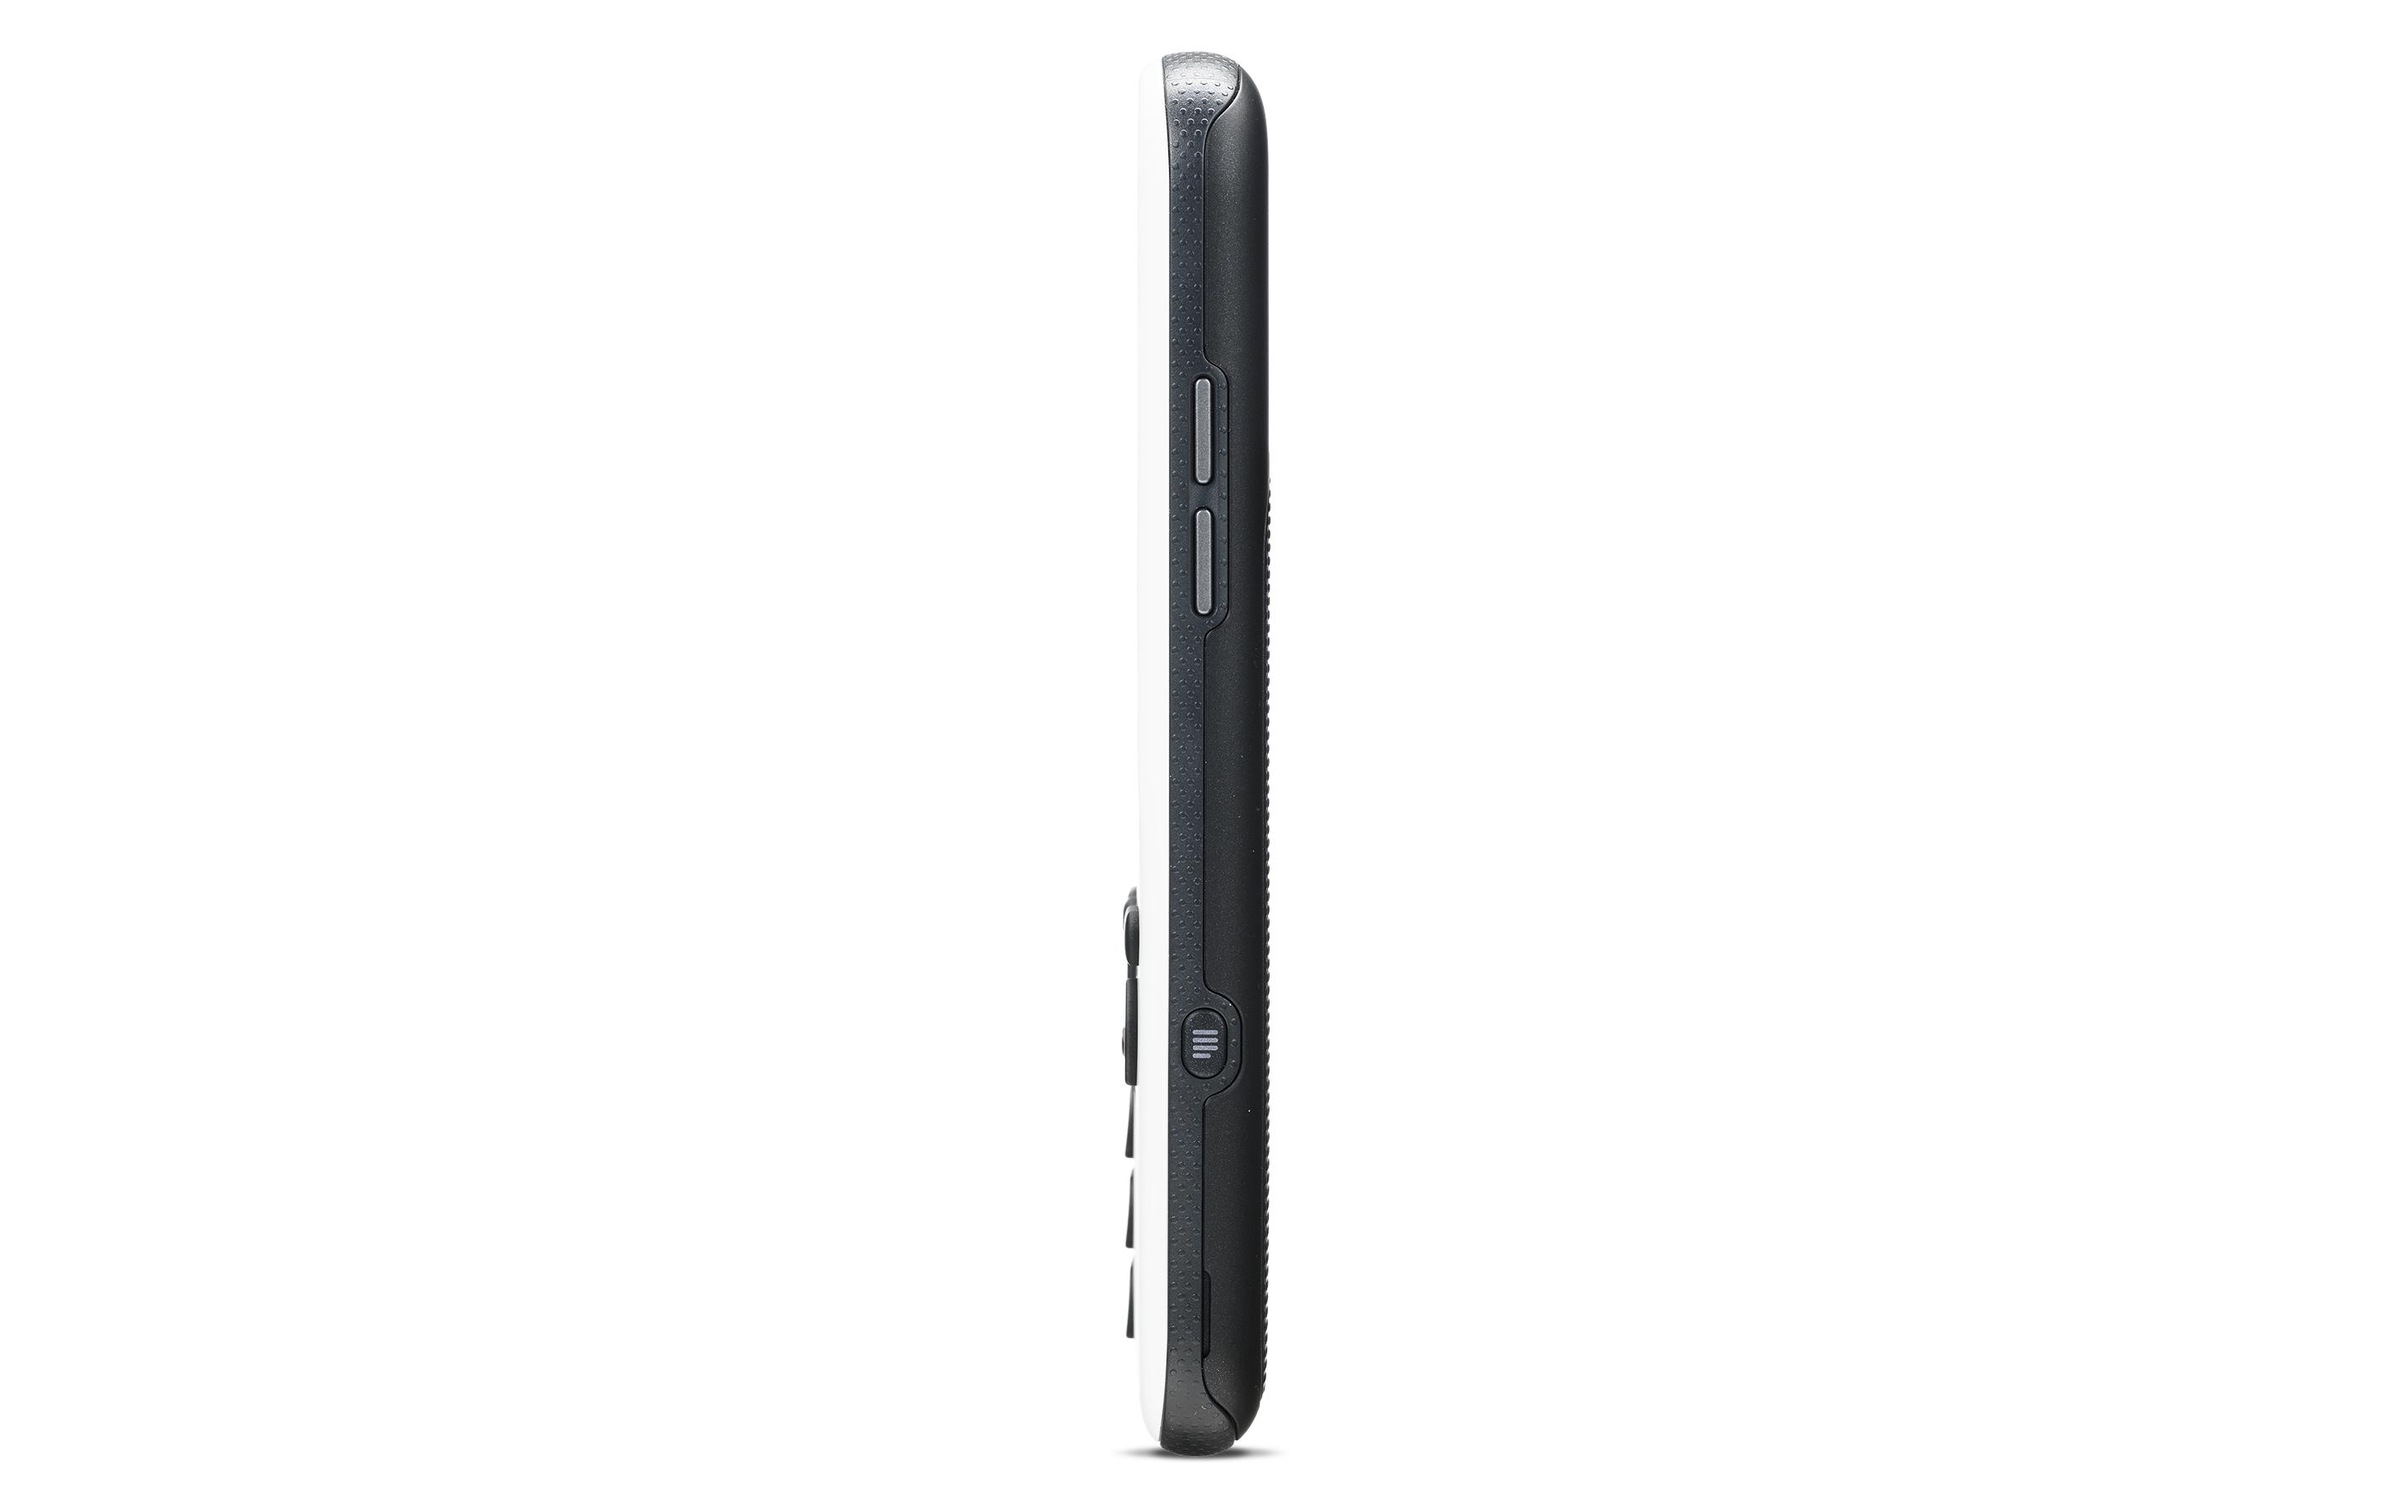 Doro Seniorenhandy »780X«, weiss/schwarz, 7,11 cm/2,8 Zoll, 128 GB Speicherplatz